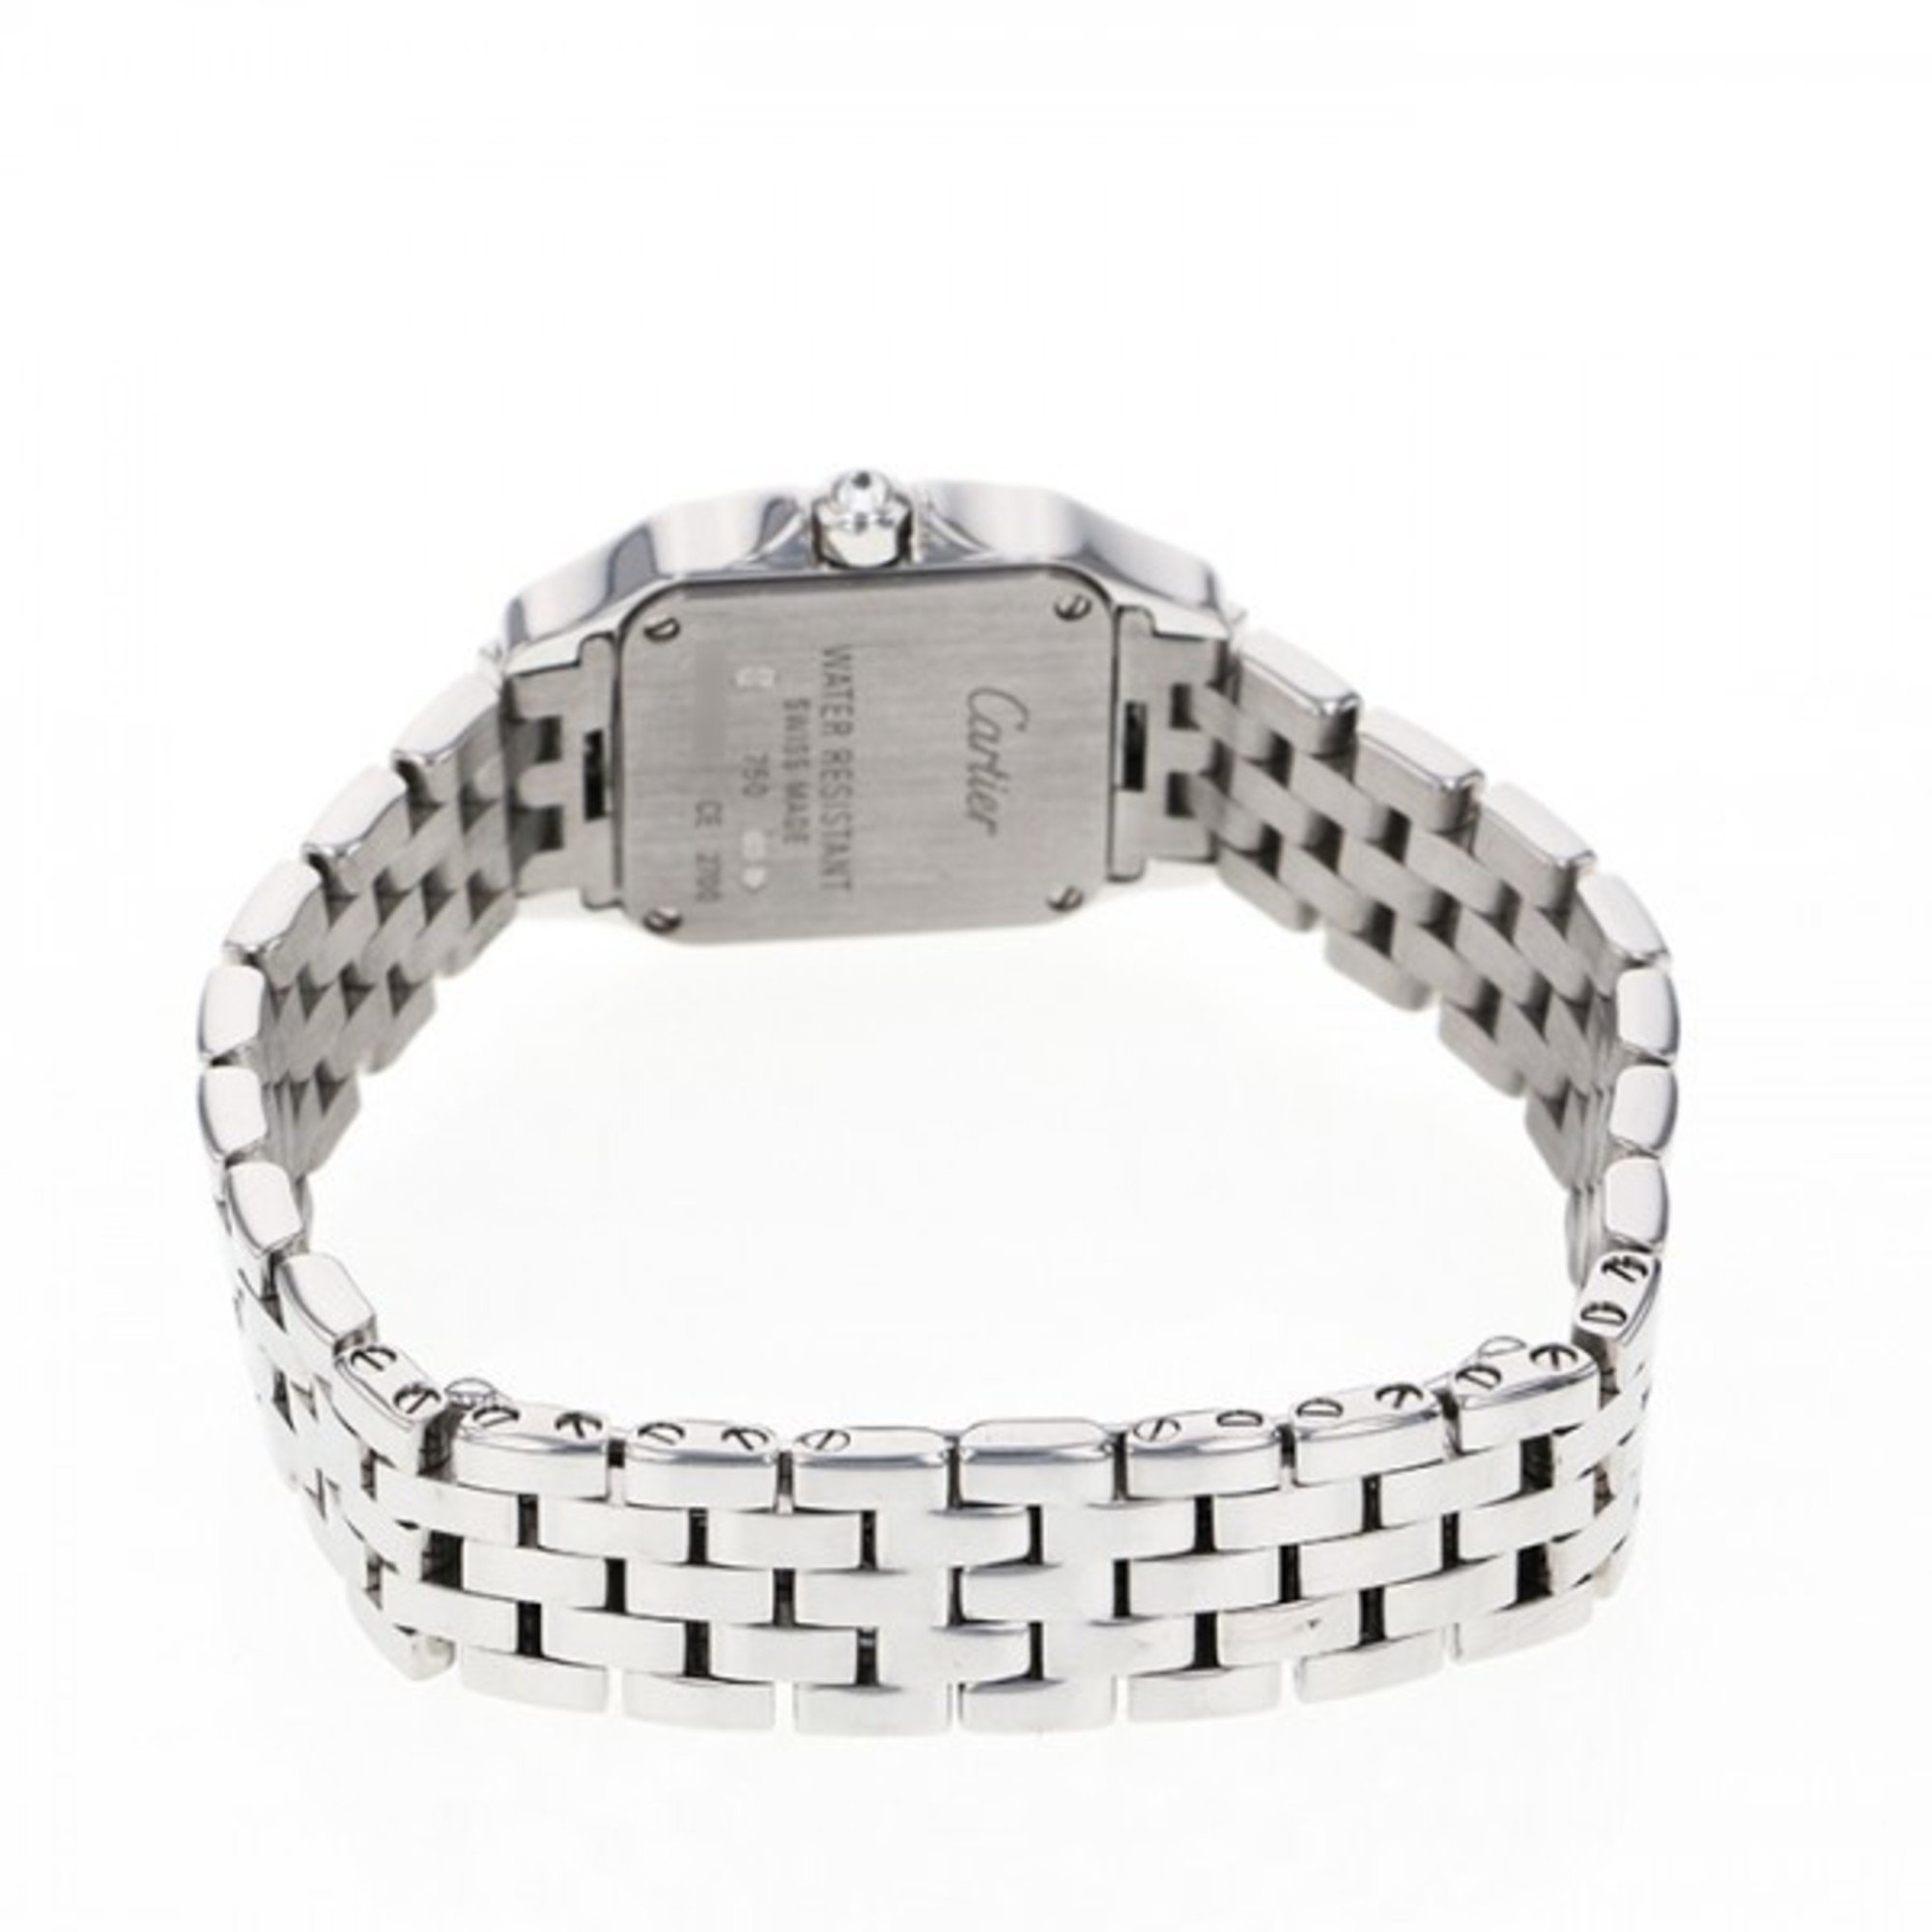 Cartier Santos de Moiselle SM WF9003Y8 silver dial watch ladies